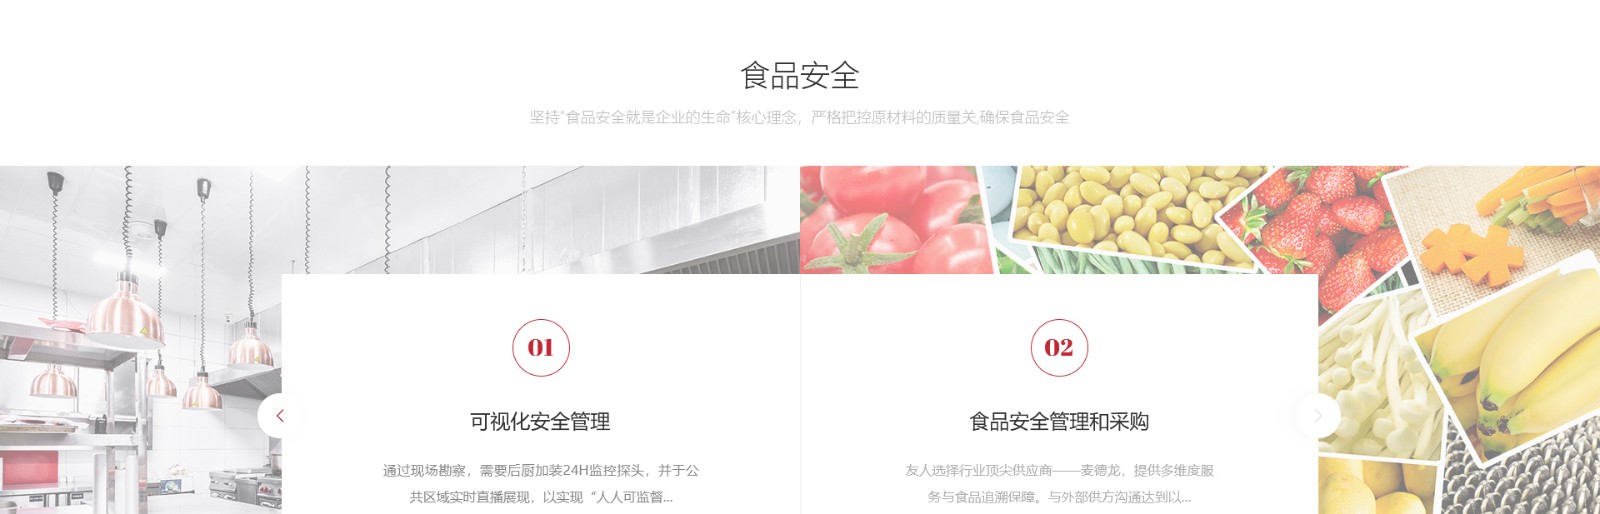 友人餐饮管理_餐饮行业平台网站_洛壹网络平台开发